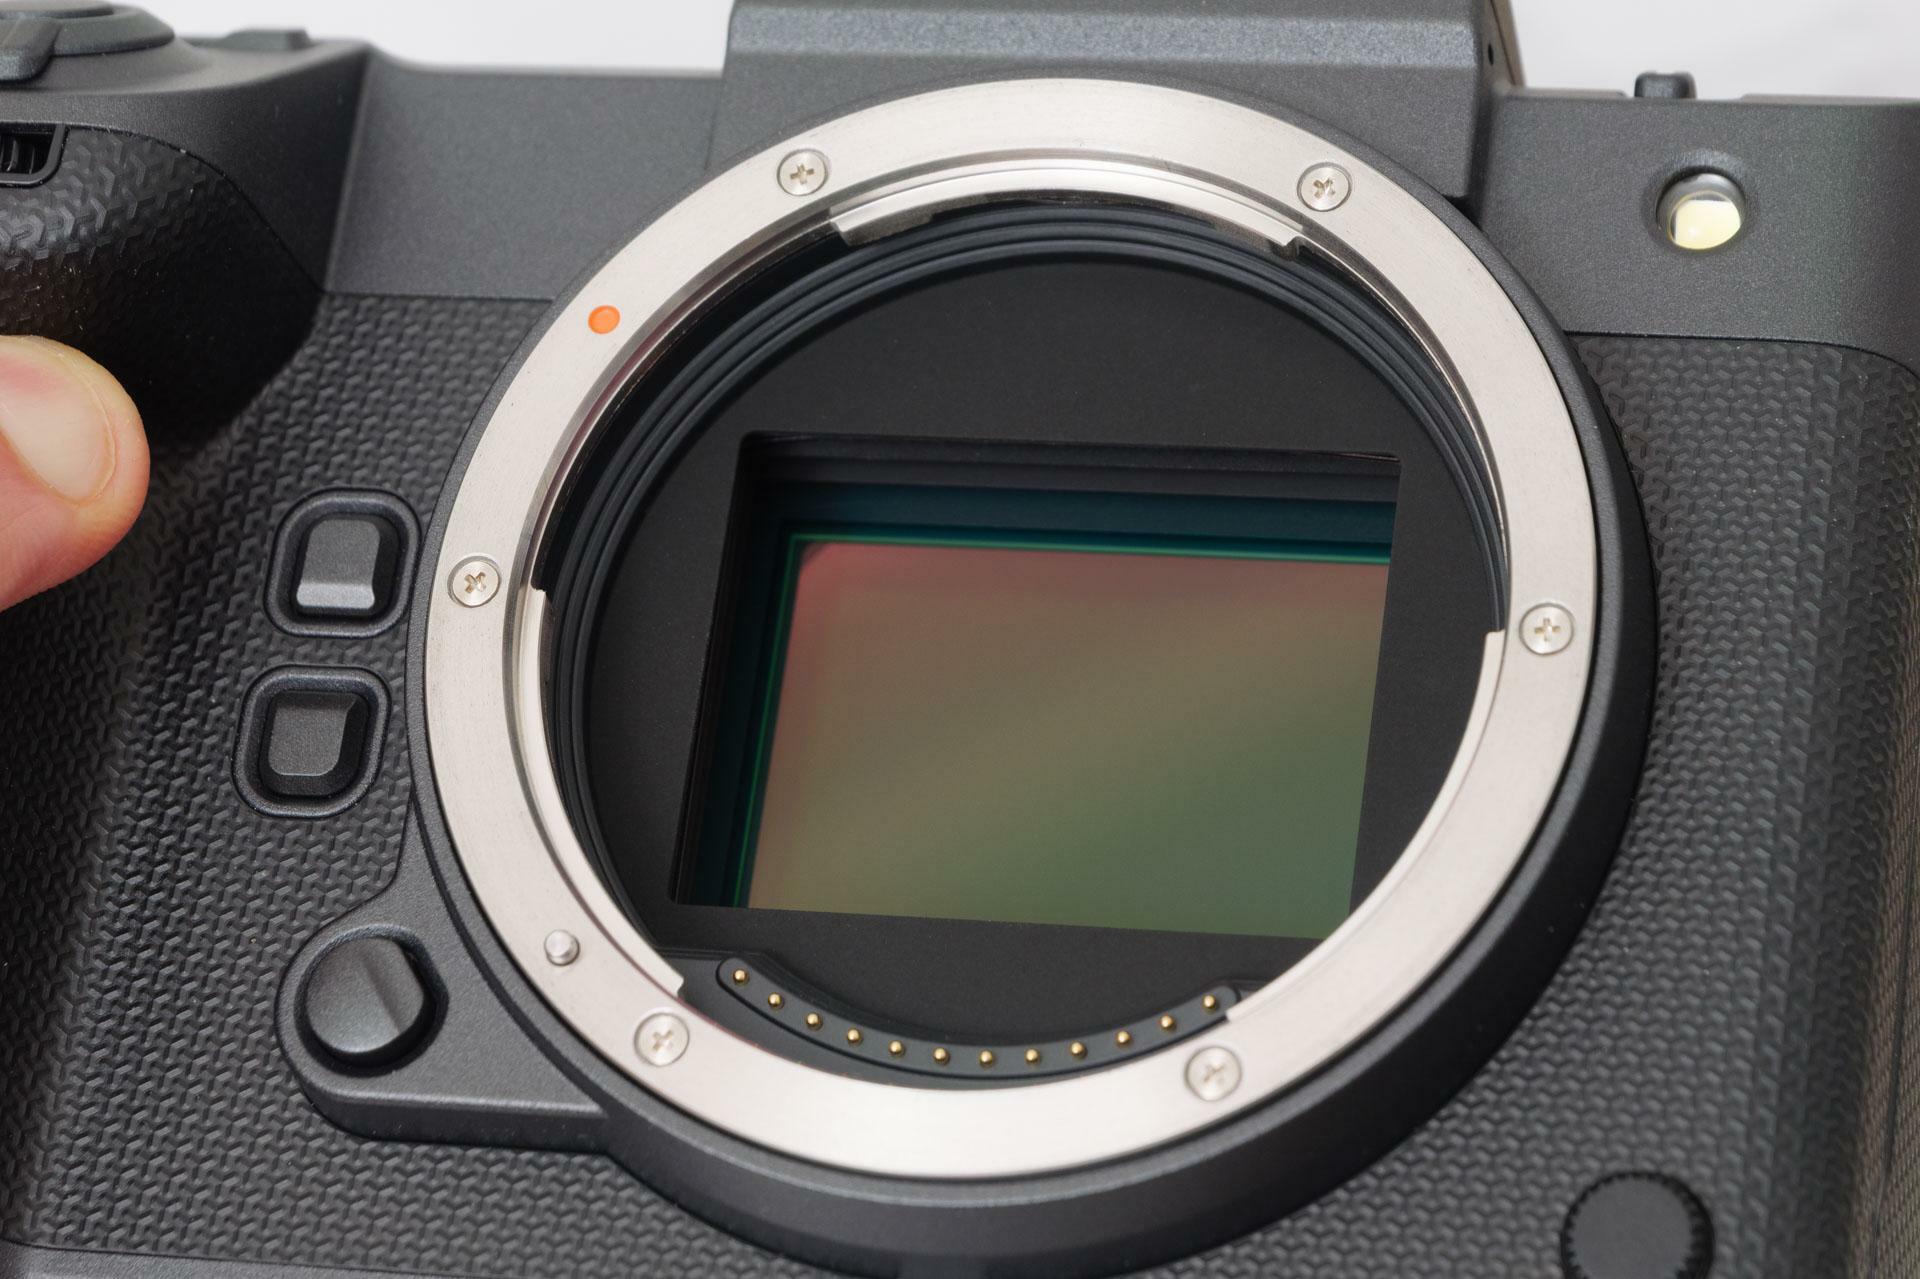 対角55mmのラージフォーマット（43.8×32.9mm）イメージセンサー。いわゆる中判デジタルカメラだ。